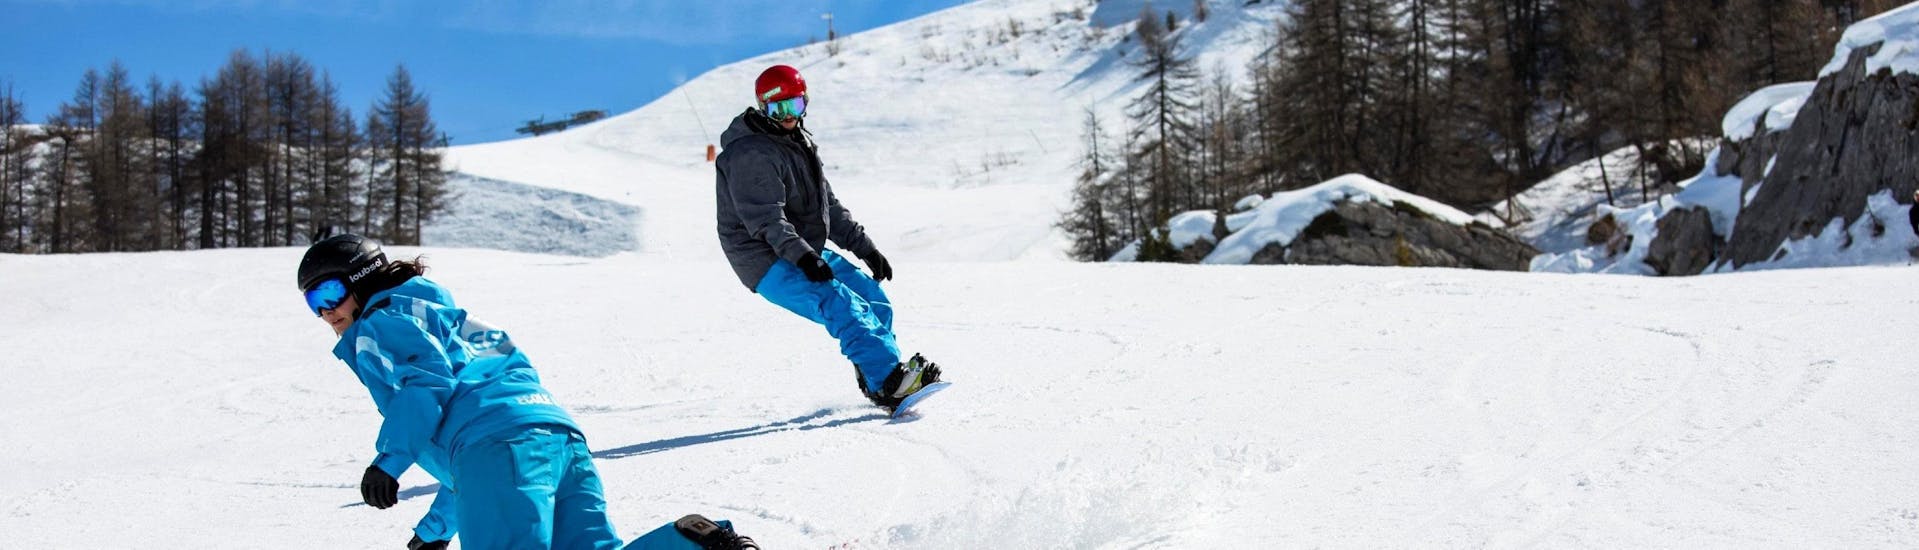 Privé snowboardlessen vanaf 8 jaar.